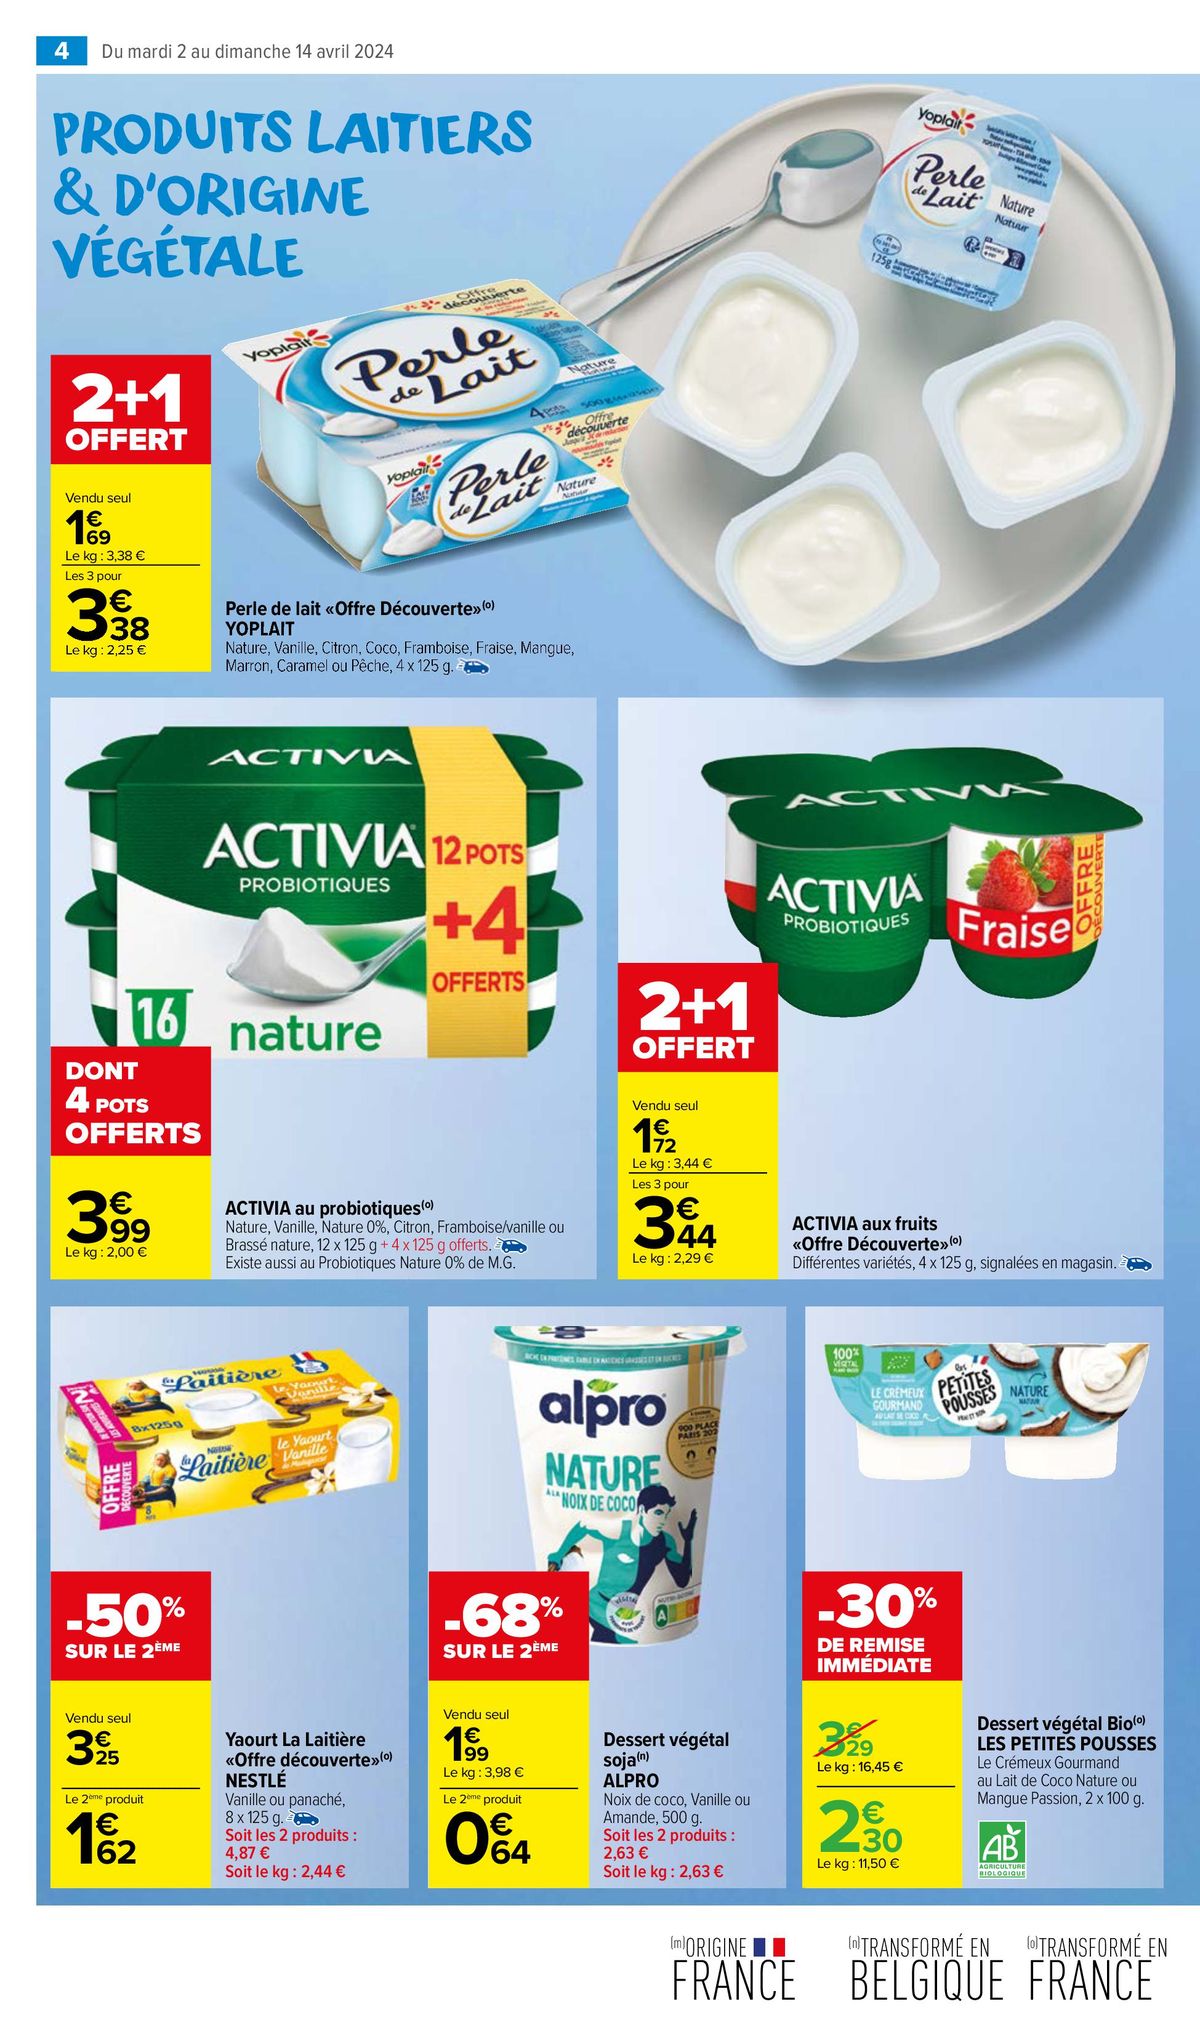 Catalogue Un MIAM pour les produits laitiers, page 00008